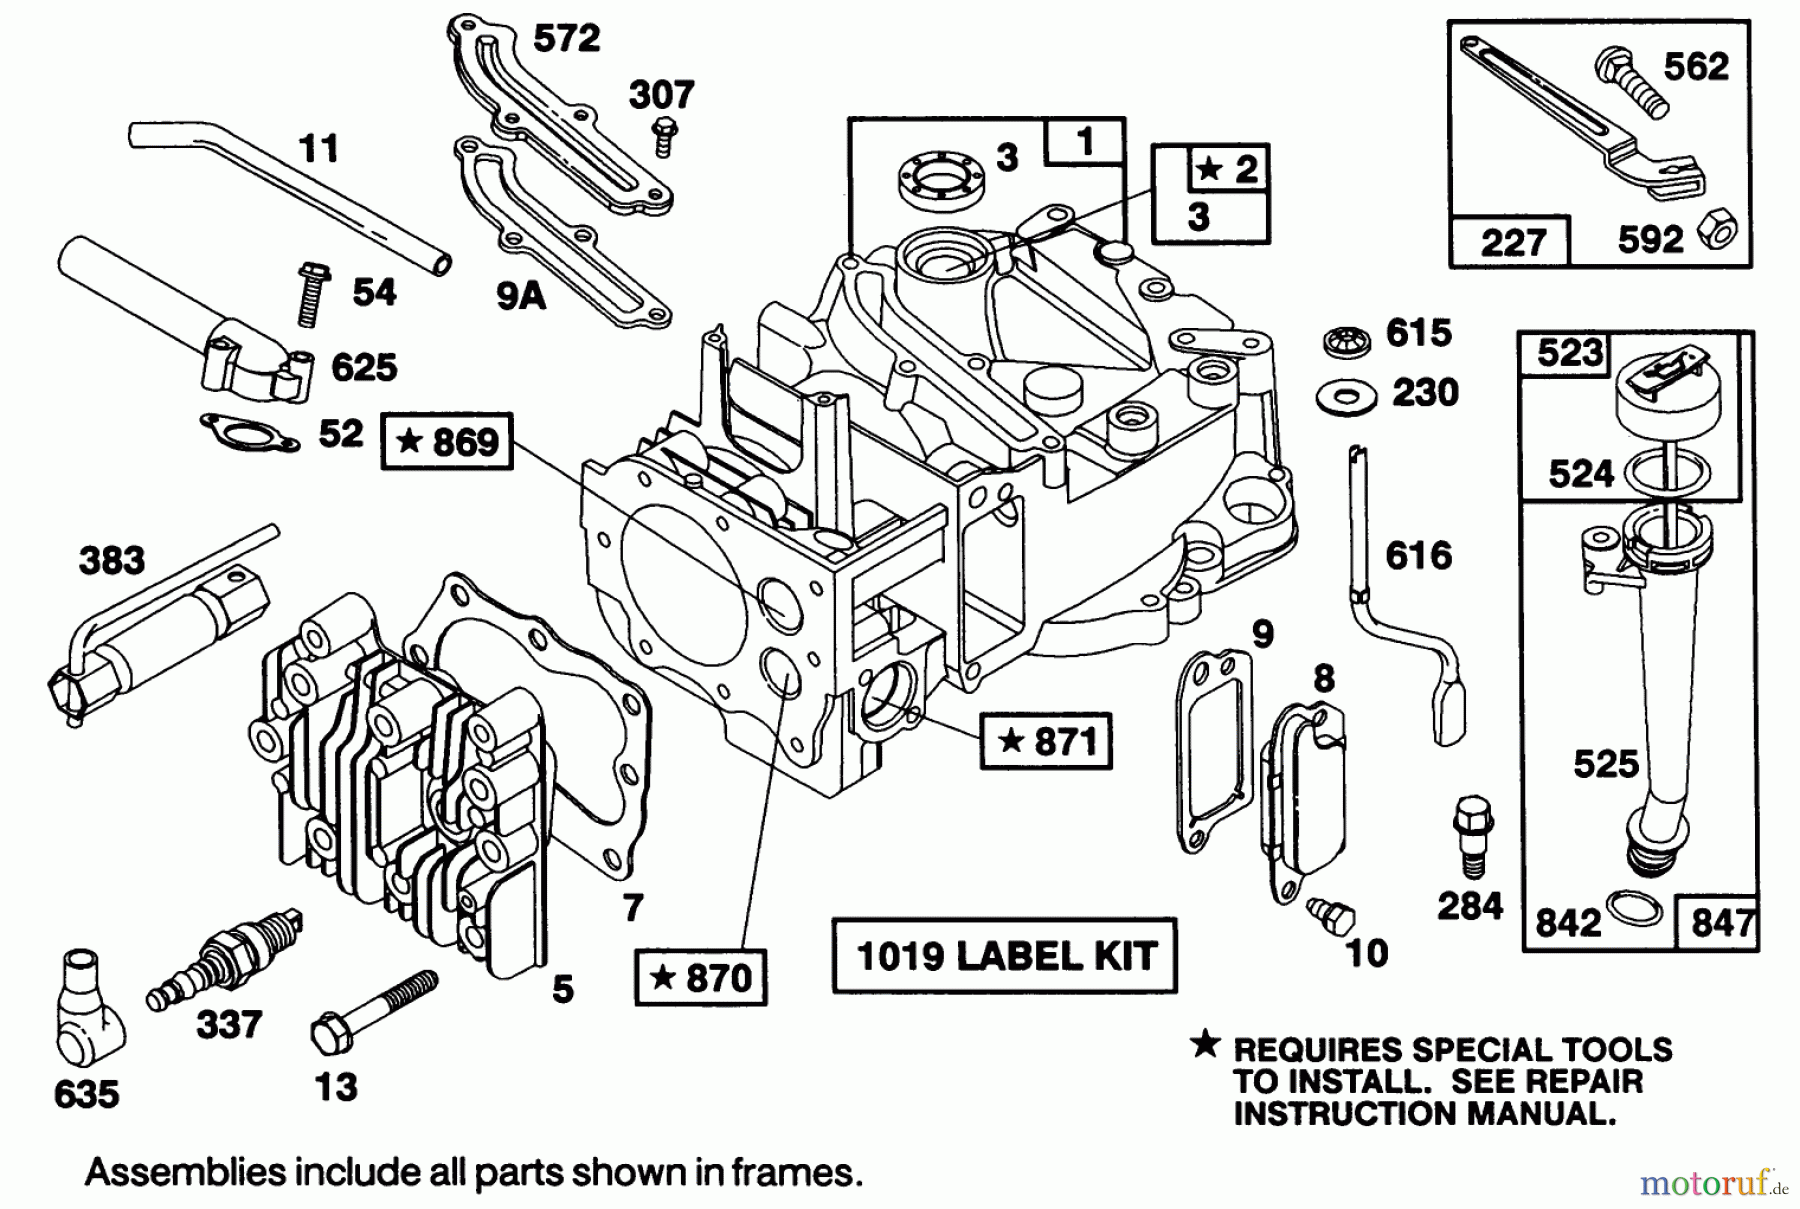  Toro Neu Mowers, Walk-Behind Seite 1 16402 - Toro Lawnmower, 1991 (1000001-1999999) ENGINE BRIGGS & STRATTON MODEL 122707-3187-01 #1